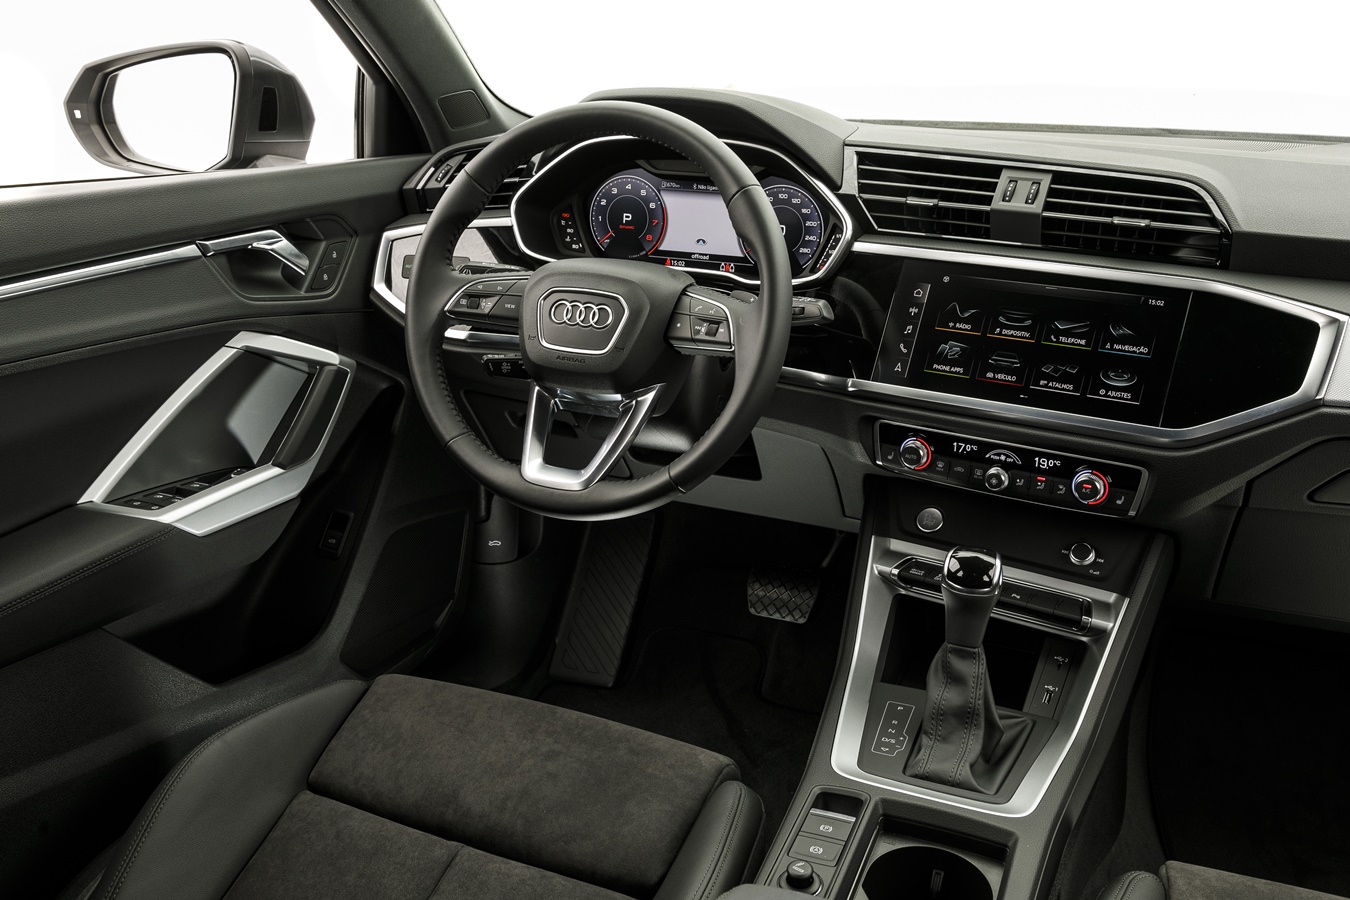  Audi Q3 com interior renovado